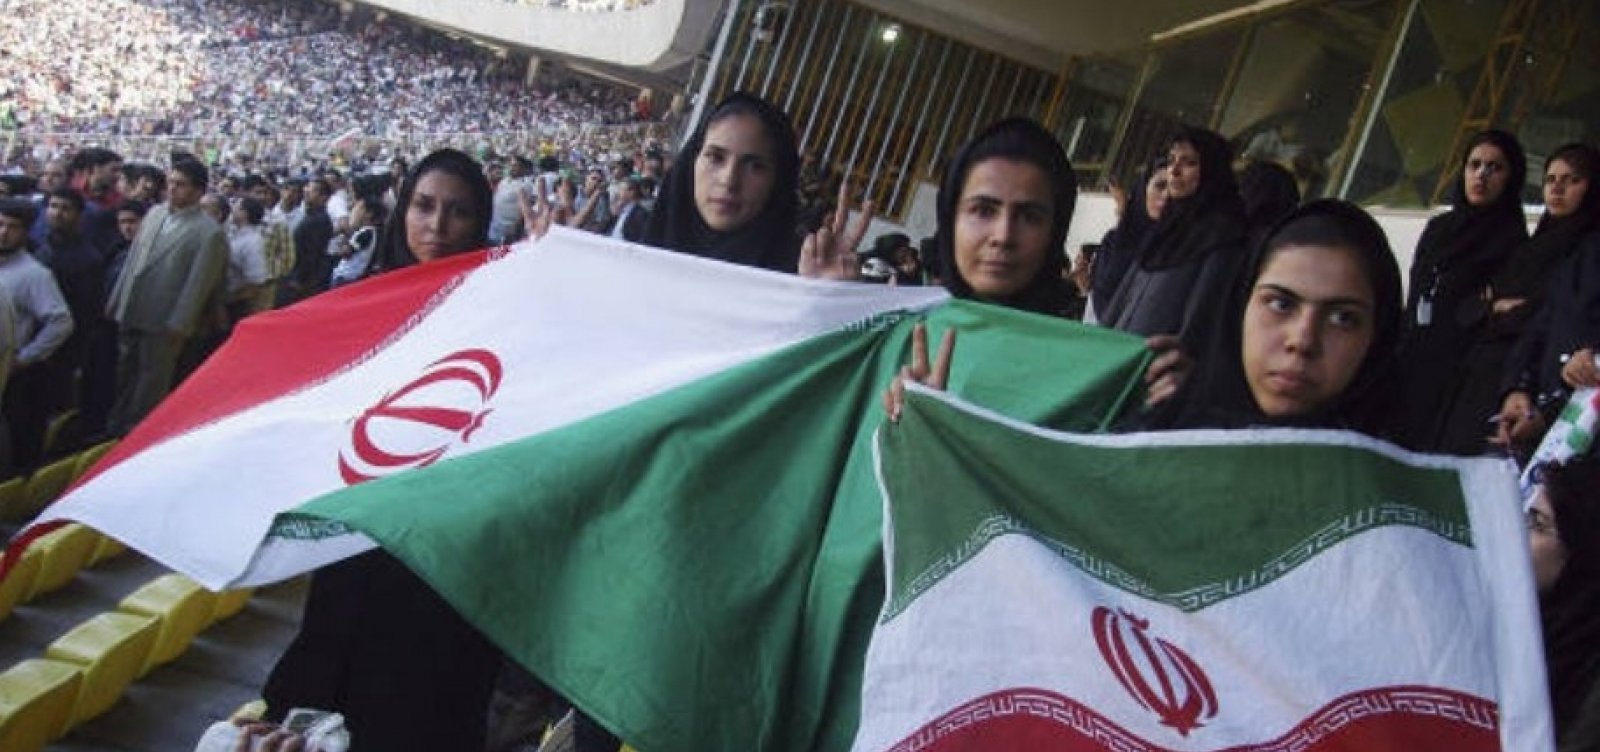 Mulheres iranianas vão poder assistir jogo de futebol em estádio após 40 anos